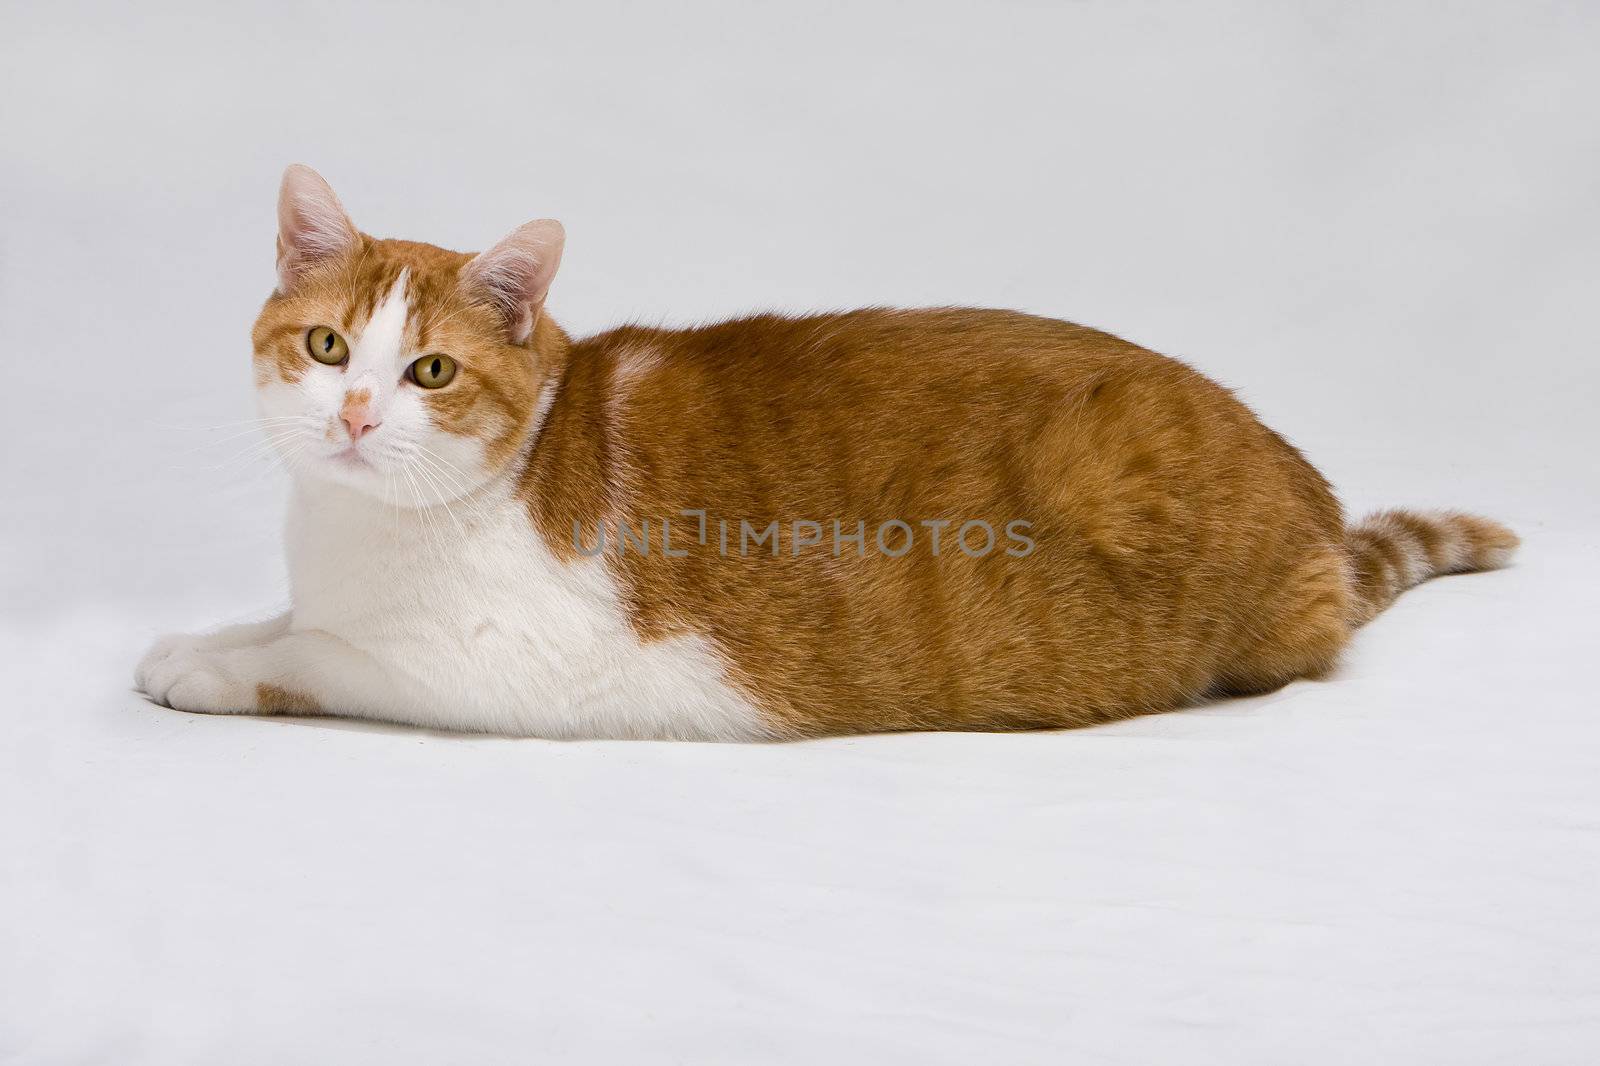 Cute fat cat by phakimata